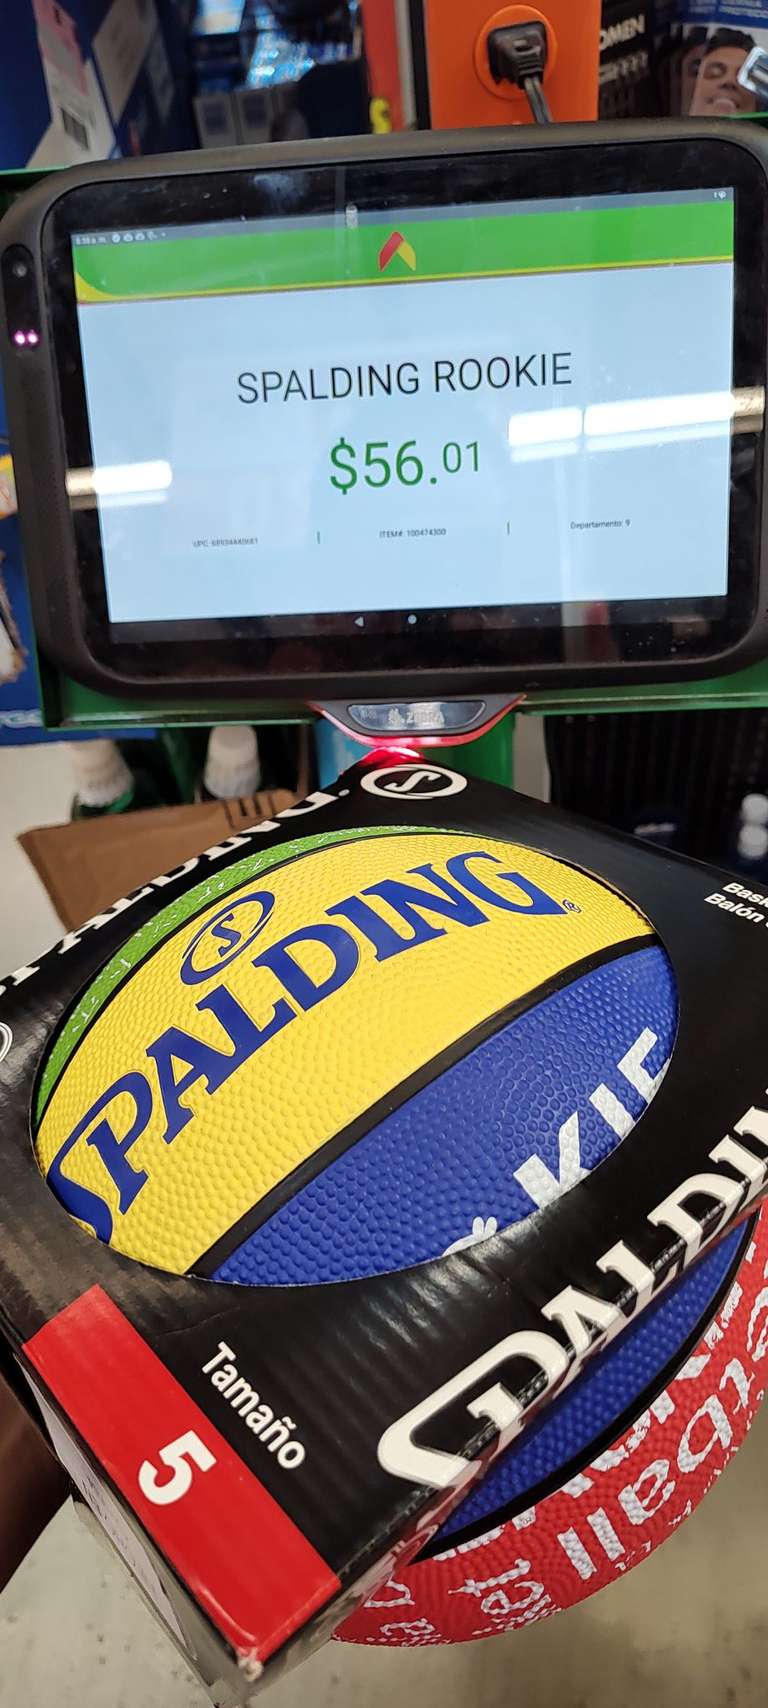 Balón Spalding Basquetbol liquidación Walmart